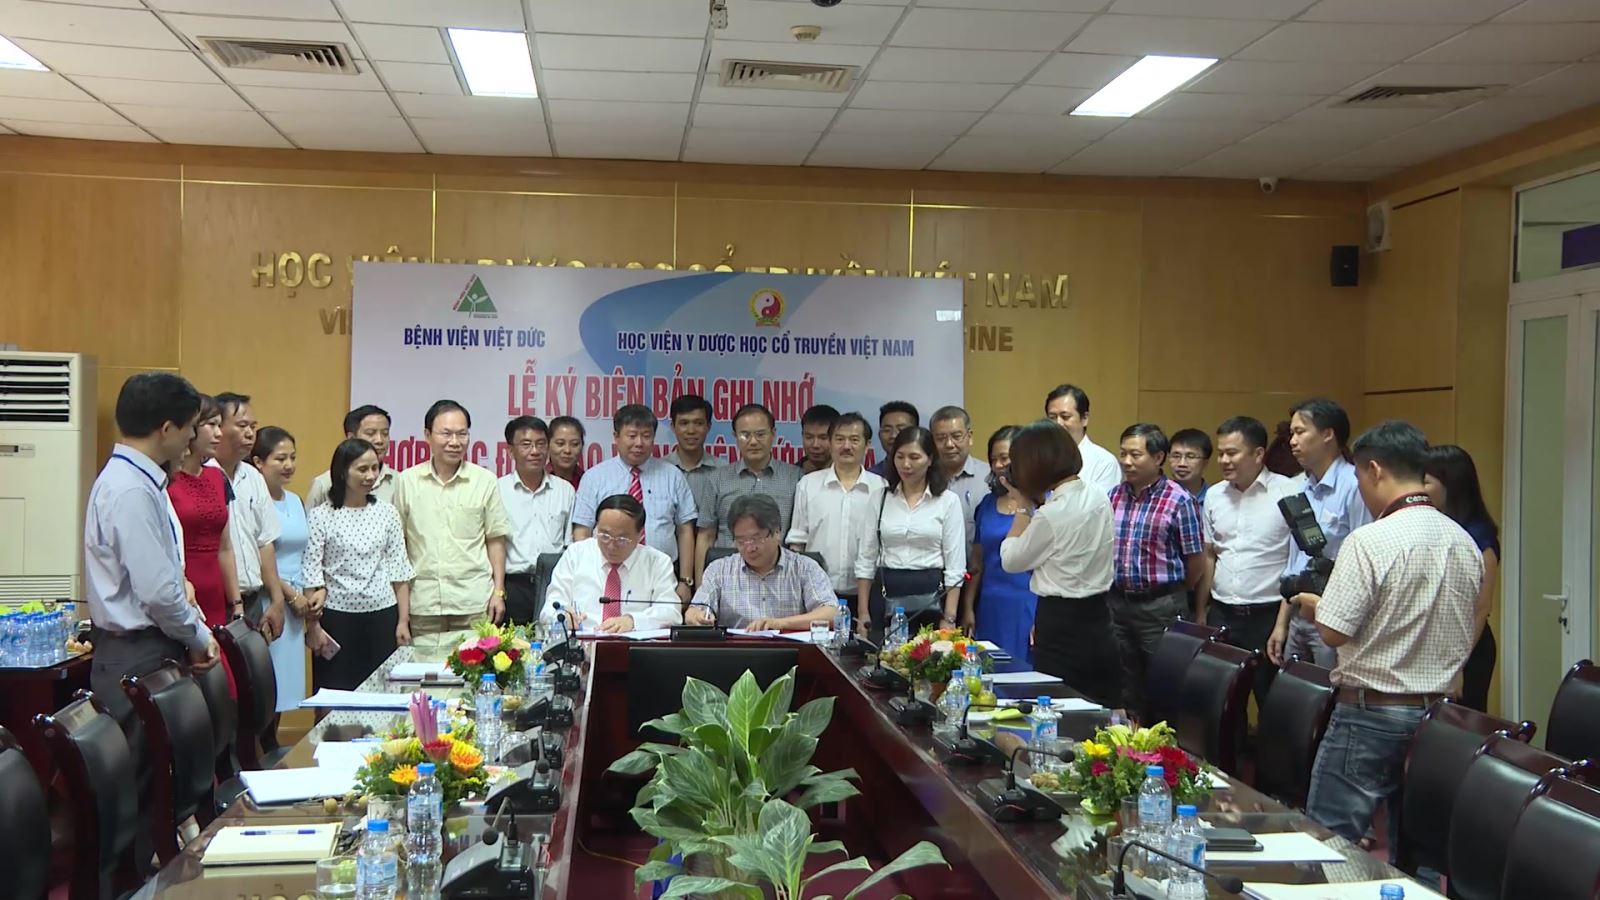 Ký kết hợp tác trong lĩnh vực đào tạo và nghiên cứu khoa học giữa Học viện Y Dược cổ truyền Việt Nam và Bệnh viện Hữu nghị Việt Đức